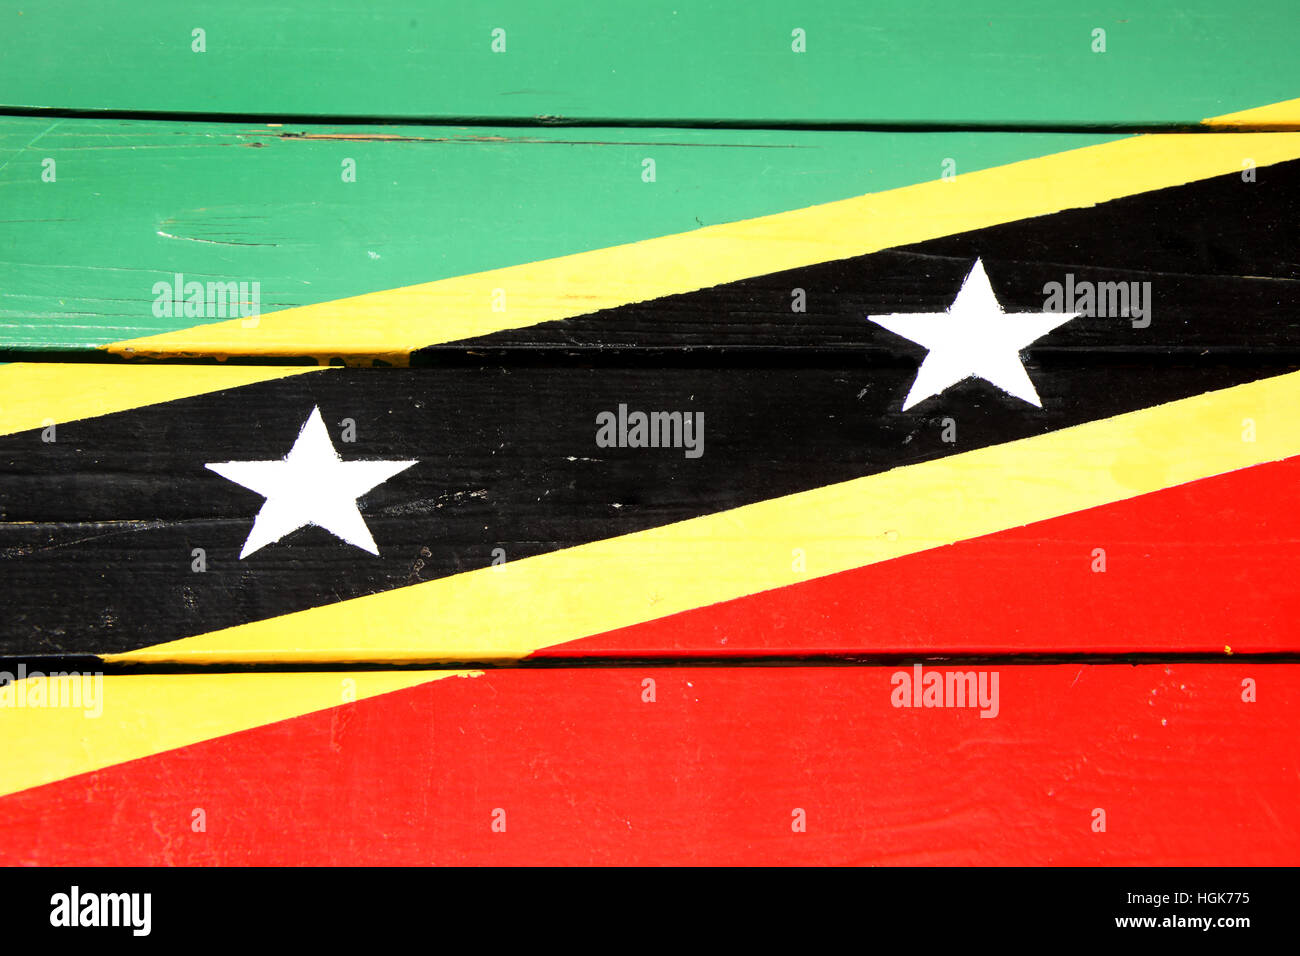 Flagge Von St Kitts Nevis Auf Holzbohlen In Leuchtenden Farben Von Rot Gelb Grun Schwarz Gemalt Bassterre Caribbean Stockfotografie Alamy